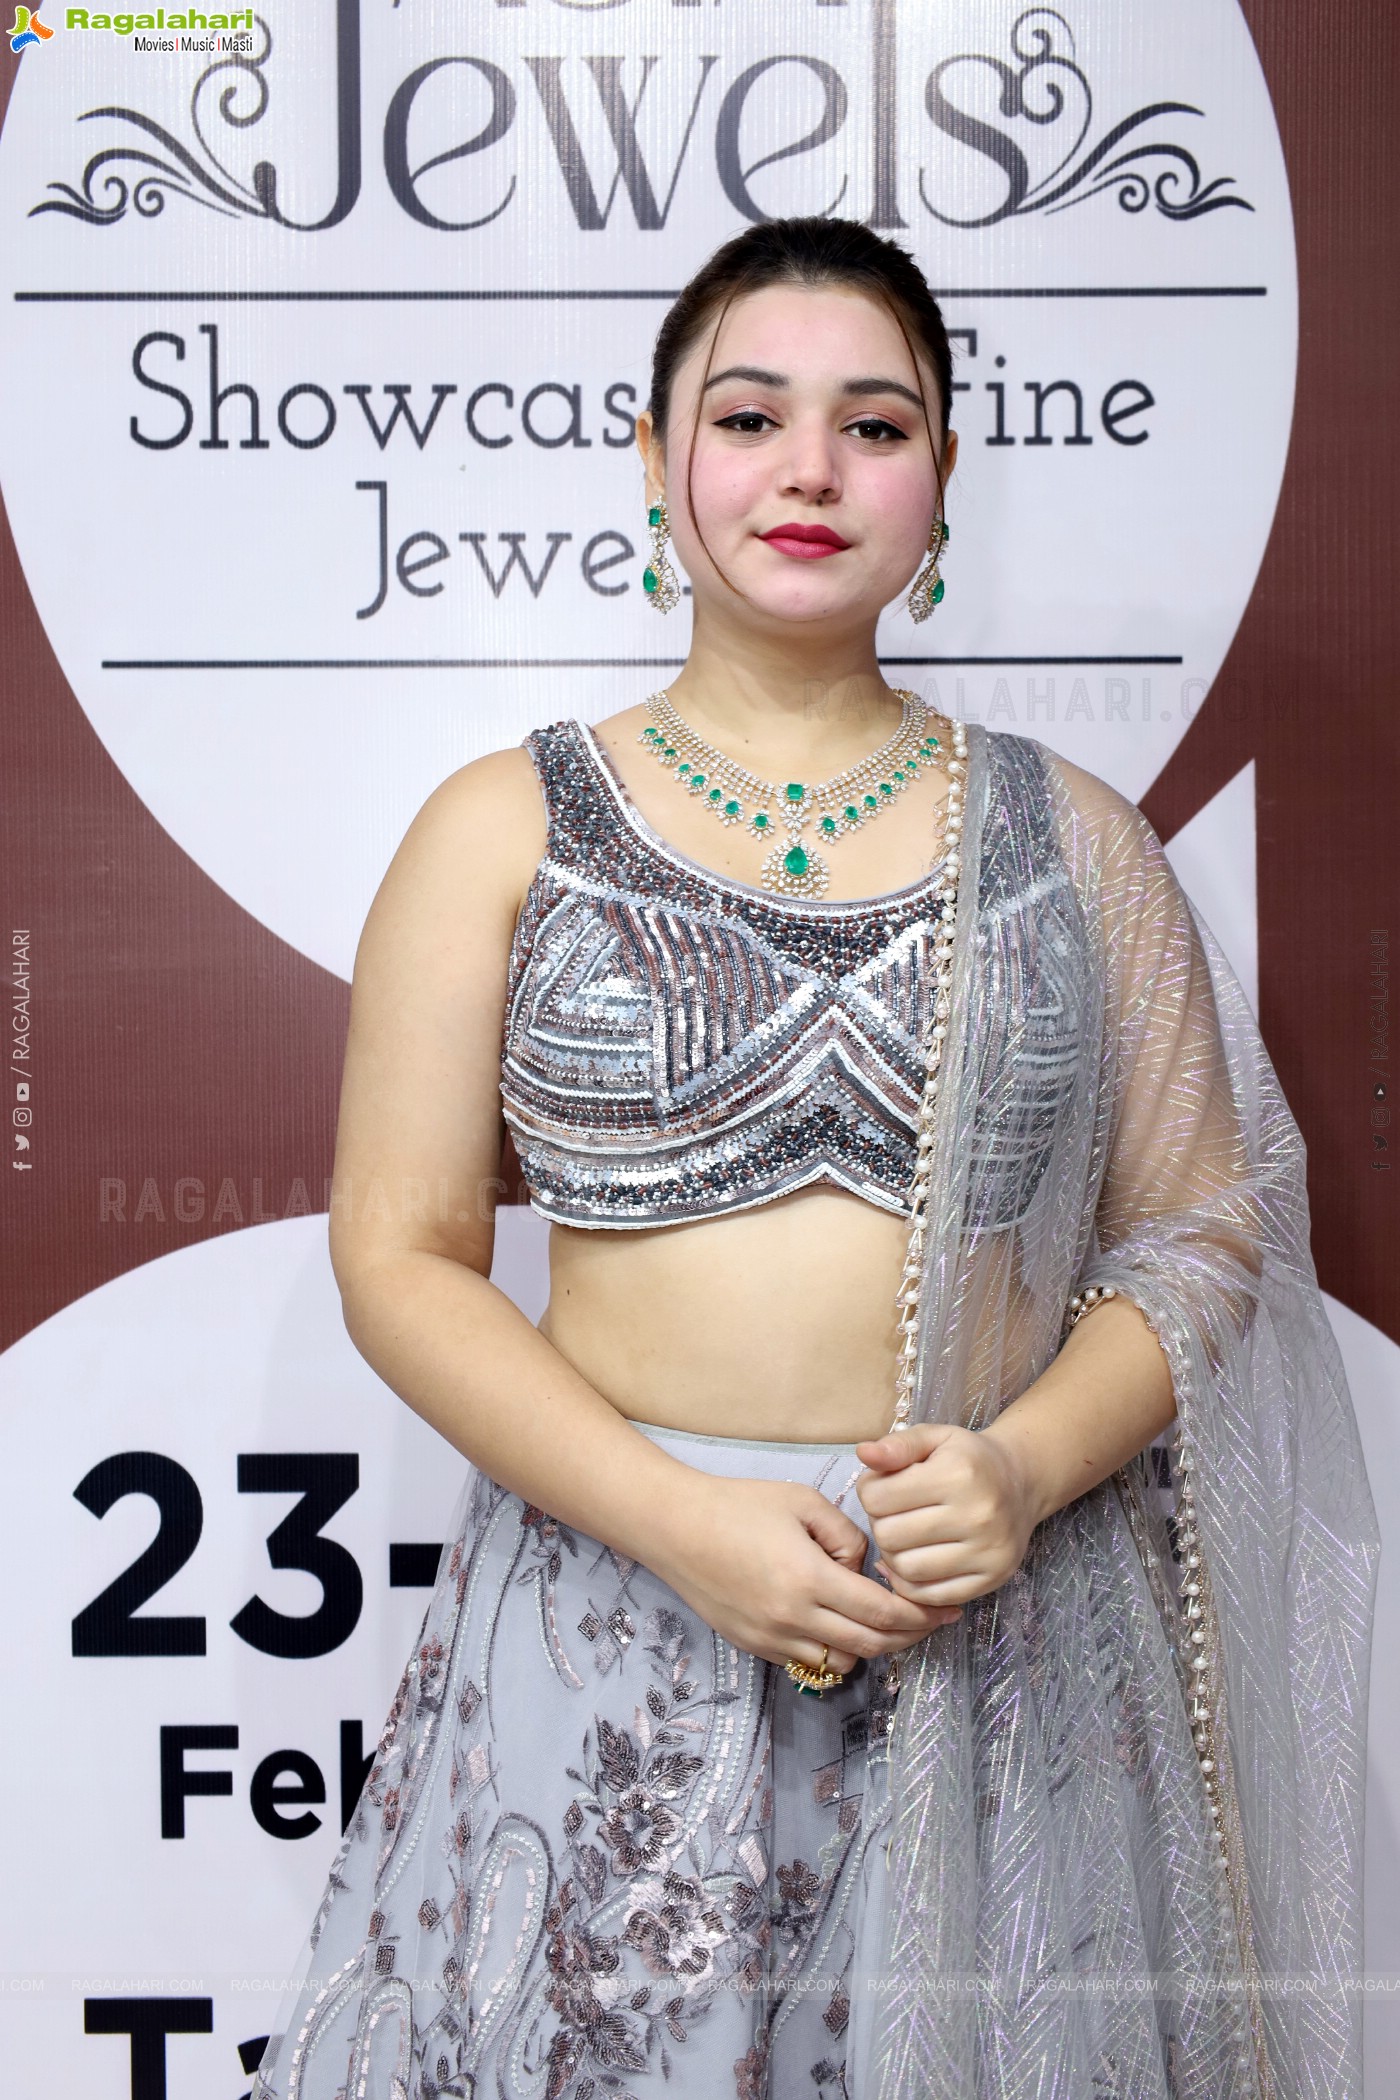 Asia Jewels Grand Jewellery Showcase Event at Taj Krishna, Hyderabad